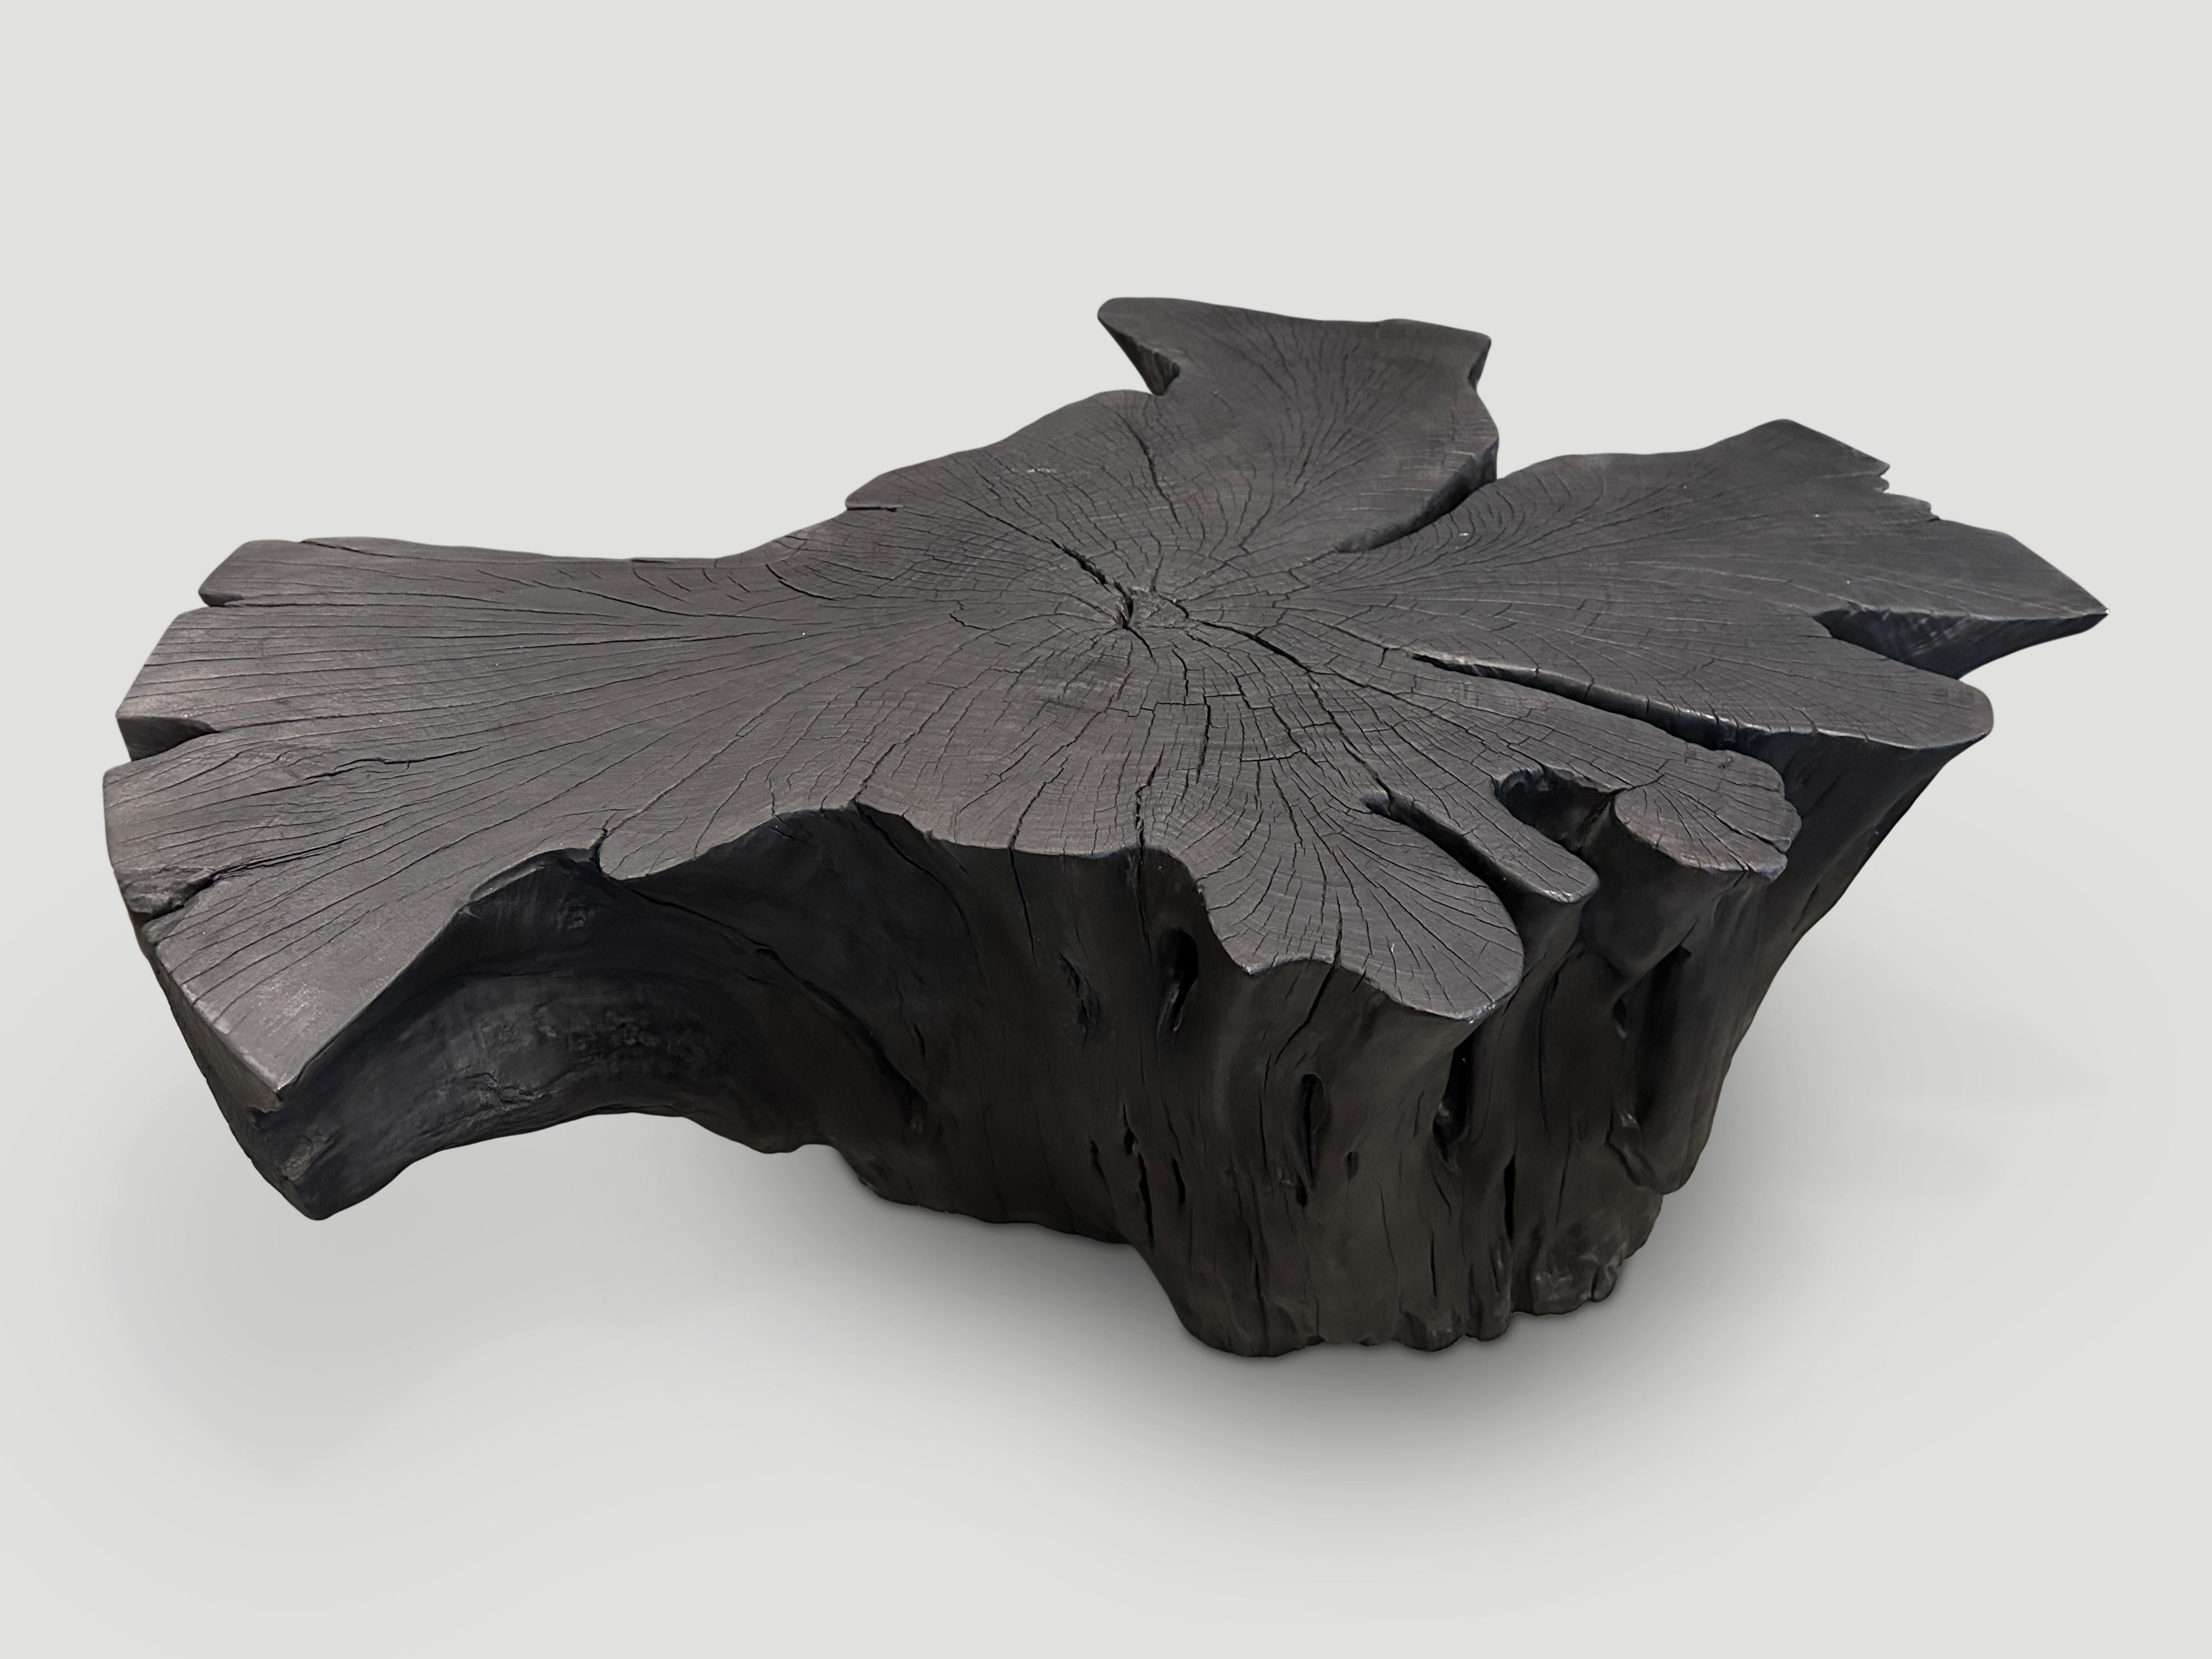 Wunderschöne Schmetterlingsform auf diesem beeindruckenden Couchtisch aus Palisanderwurzelholz. Sowohl nutzbar als auch skulptural. Gebrannt, geschliffen und versiegelt, wobei die schöne Holzmaserung zum Vorschein kommt.

Die Triple Burnt